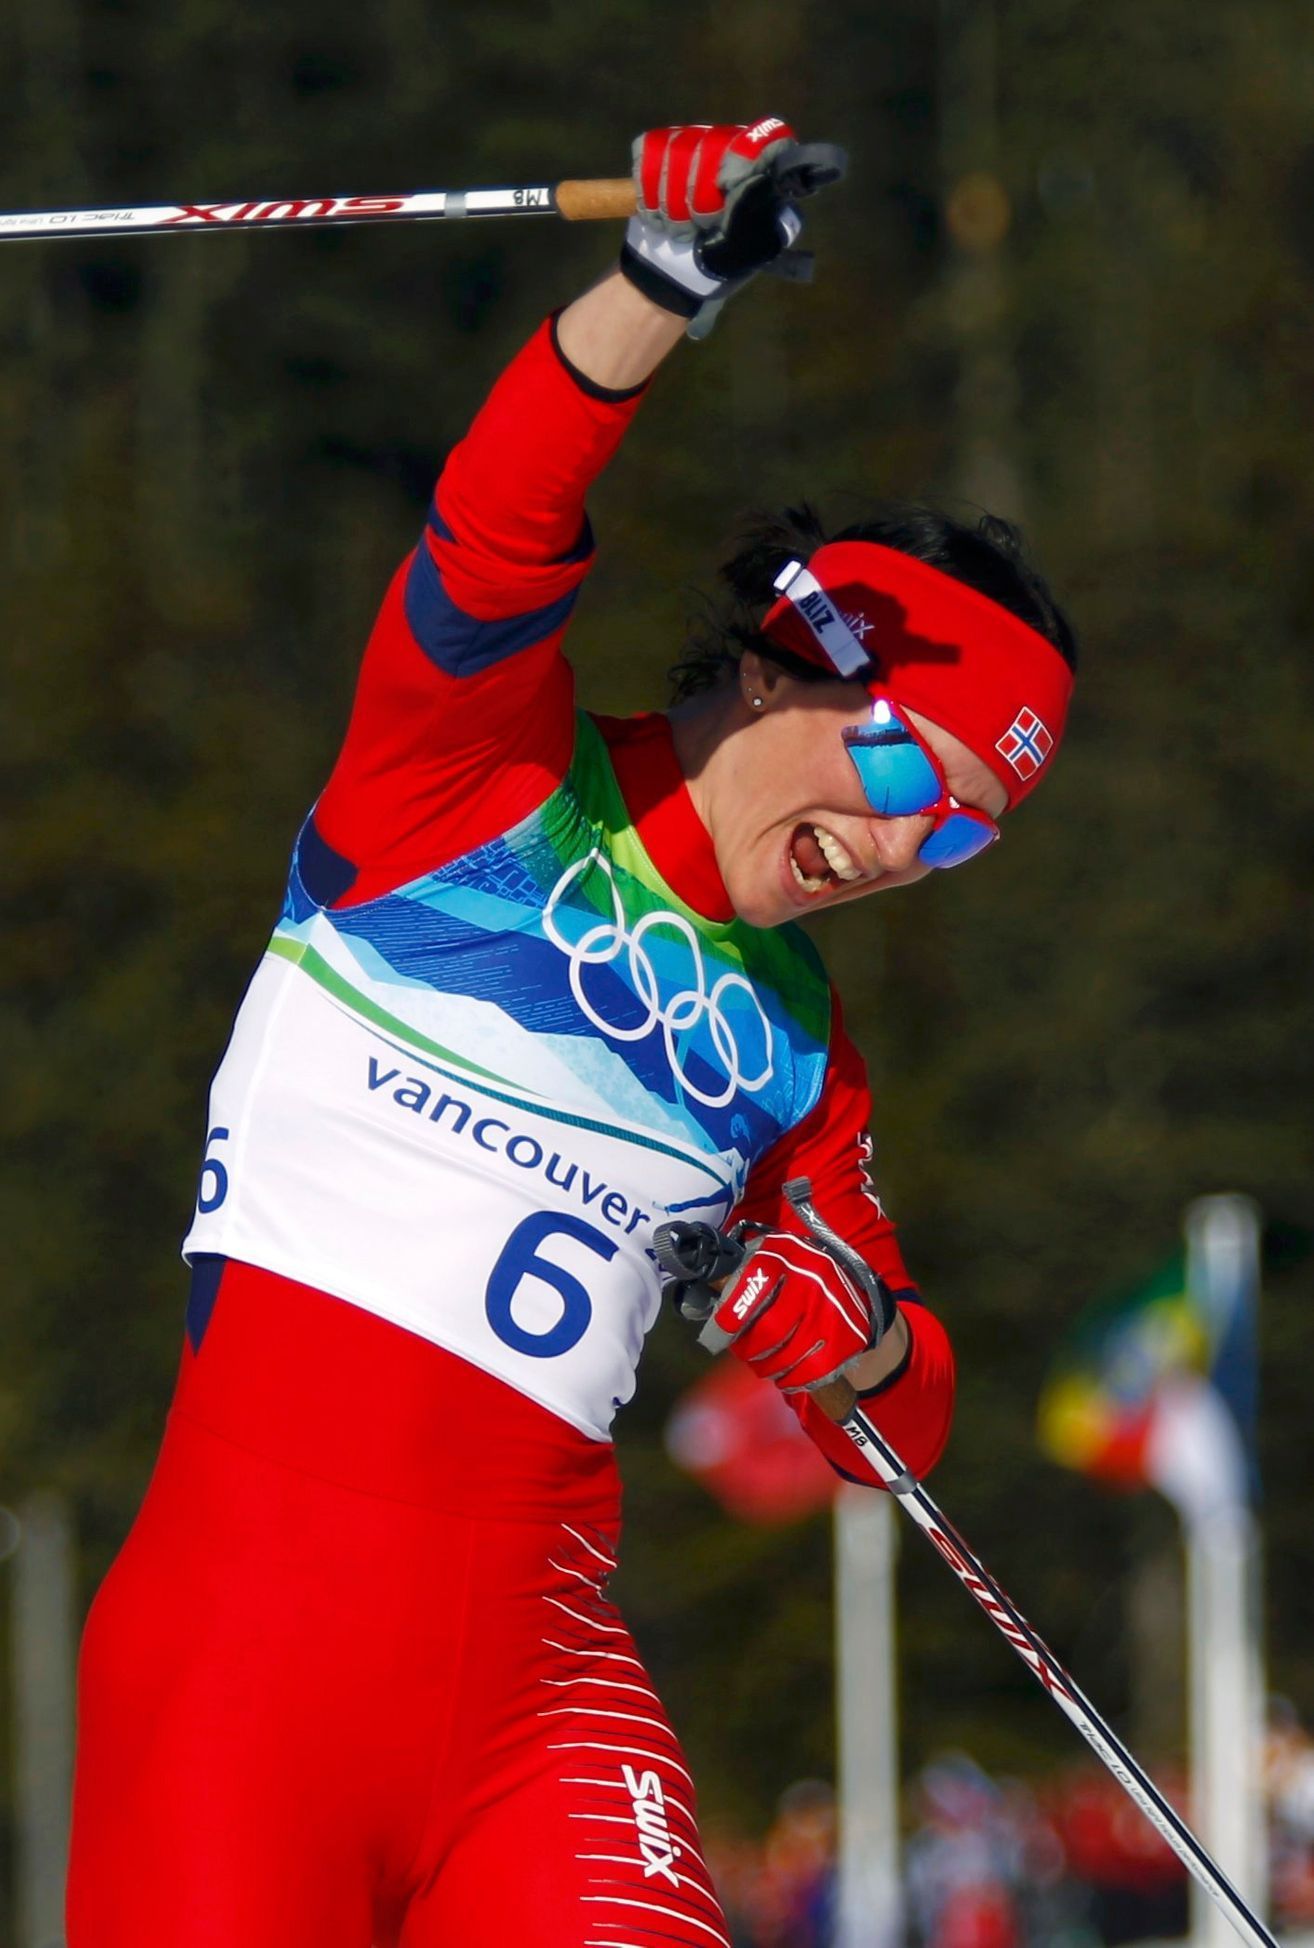 Marit Björgenová vbíhá s vítězným gestem do cíle